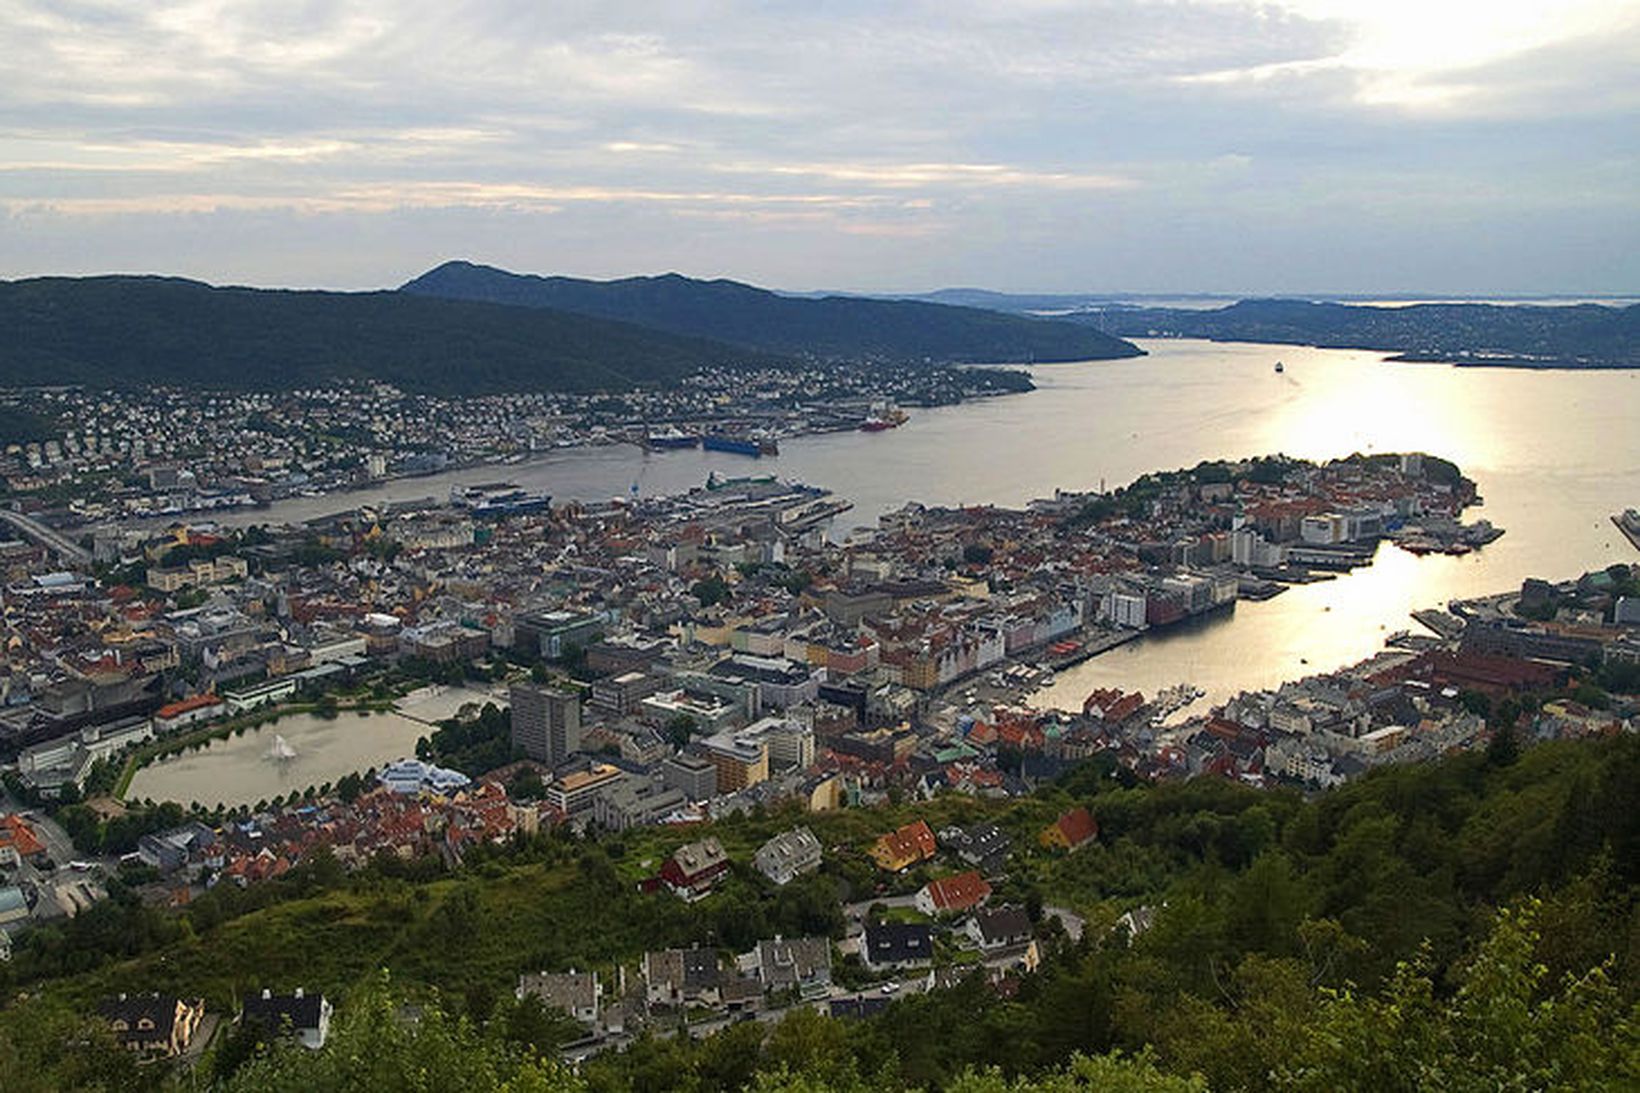 Horft yfir Bergen, sigurvegarann í maíhitaeinvíginu gegn höfuðstaðnum Ósló.